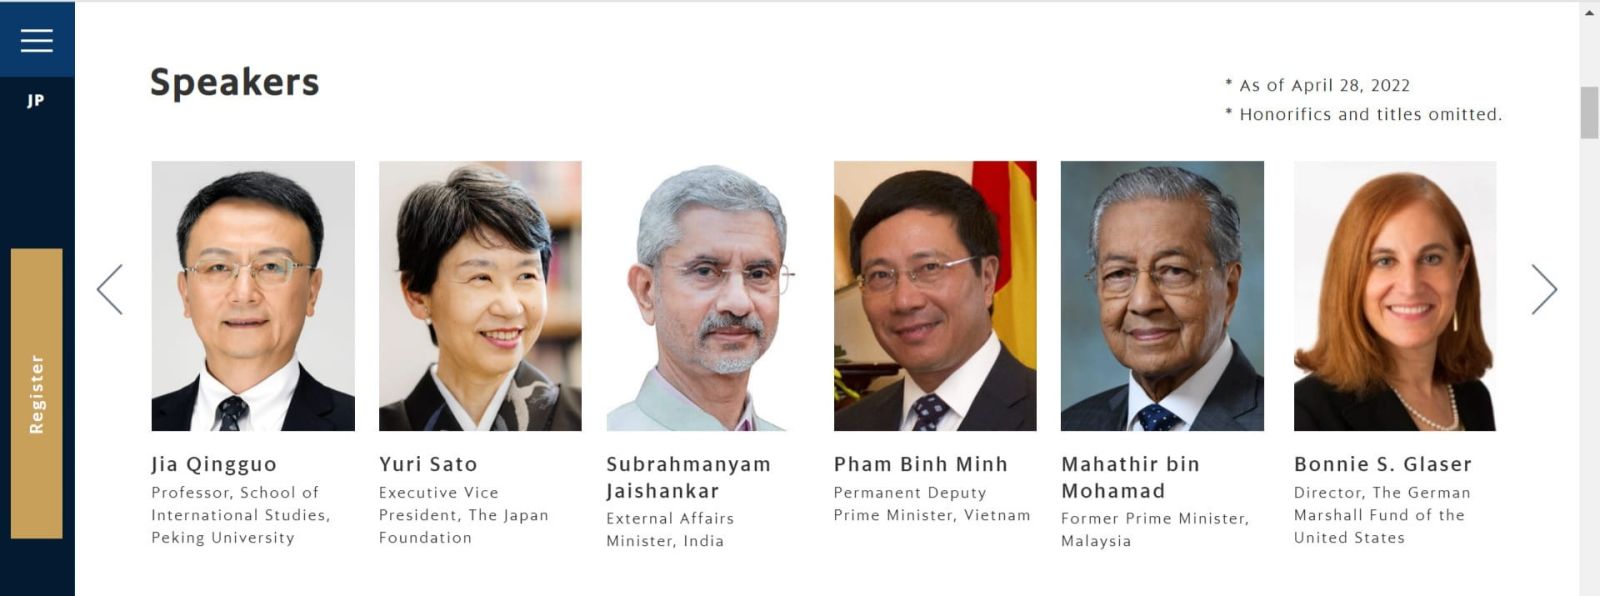 Hội nghị Tương lai Châu Á lần thứ 26 được tổ chức vào ngày 20 và 21 tháng 5 năm 2022